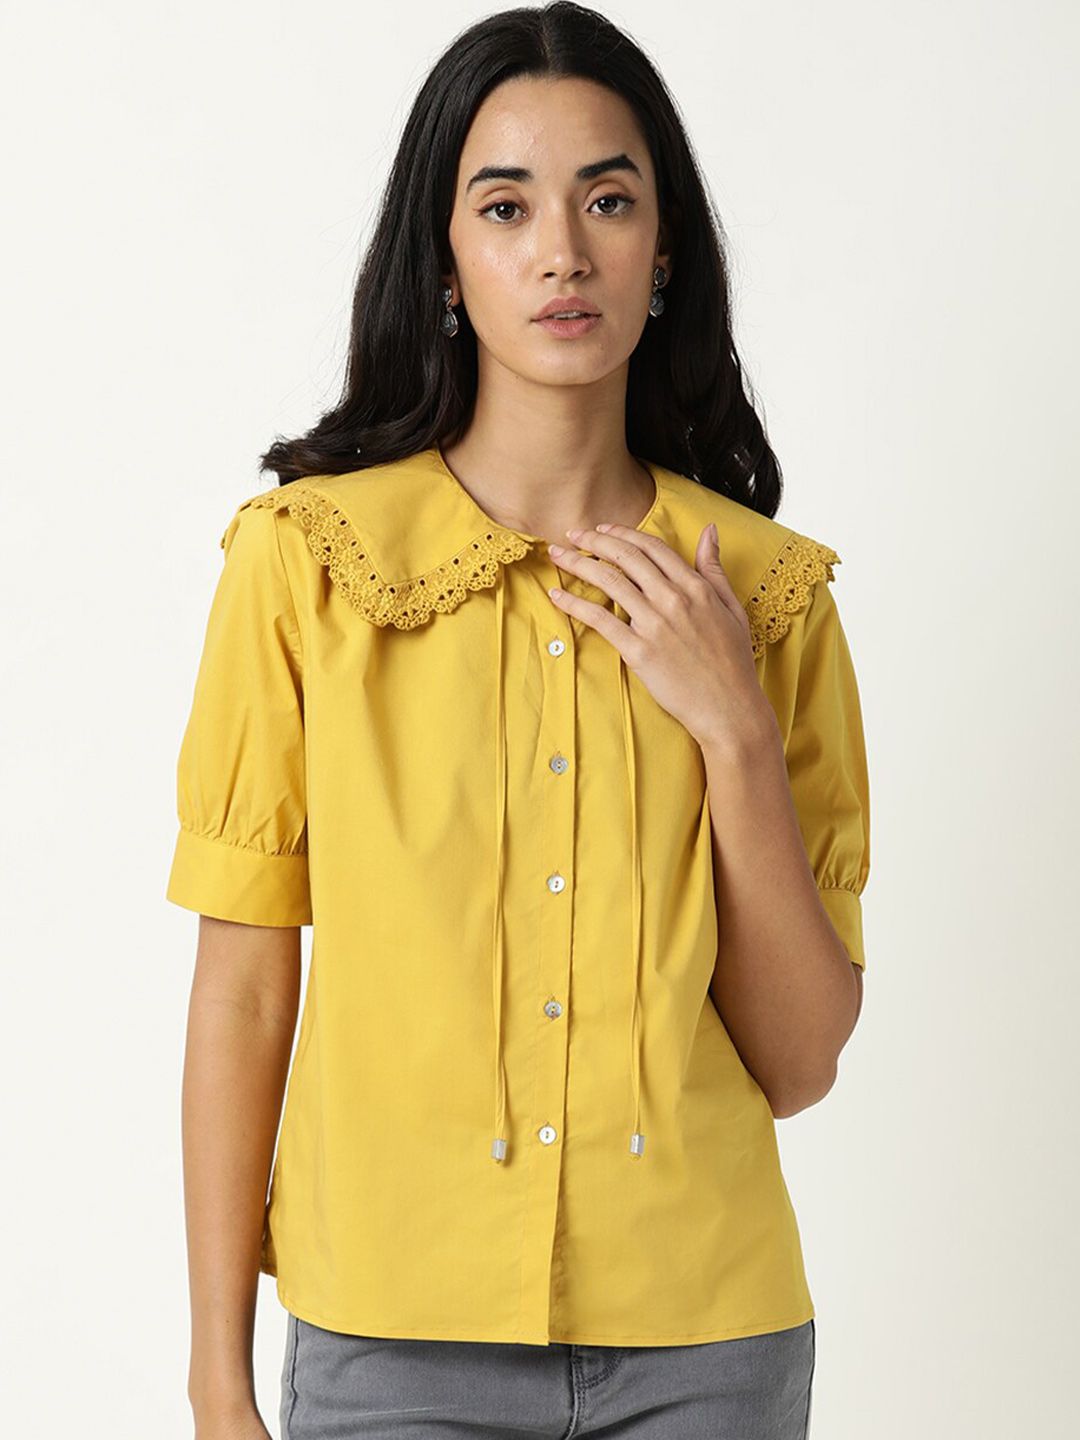 RAREISM Yellow Peter Pan Collar Shirt Style Top Price in India